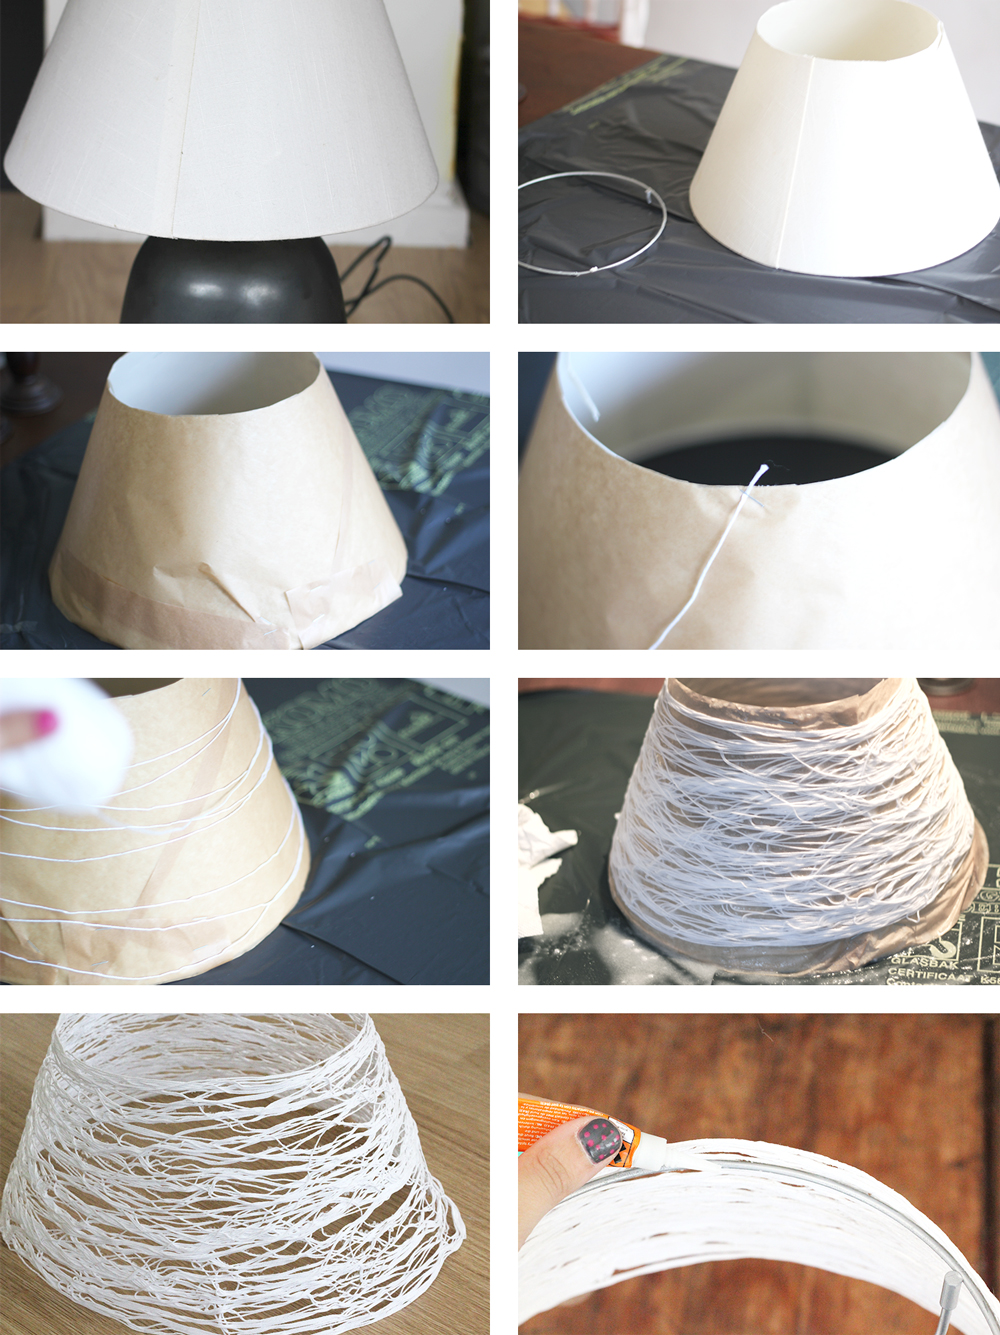 Абажур своими руками: как сделать для настольной лампы торшера и люстры, из ниток ткани и подручных материалов, пошаговые мастер-классы